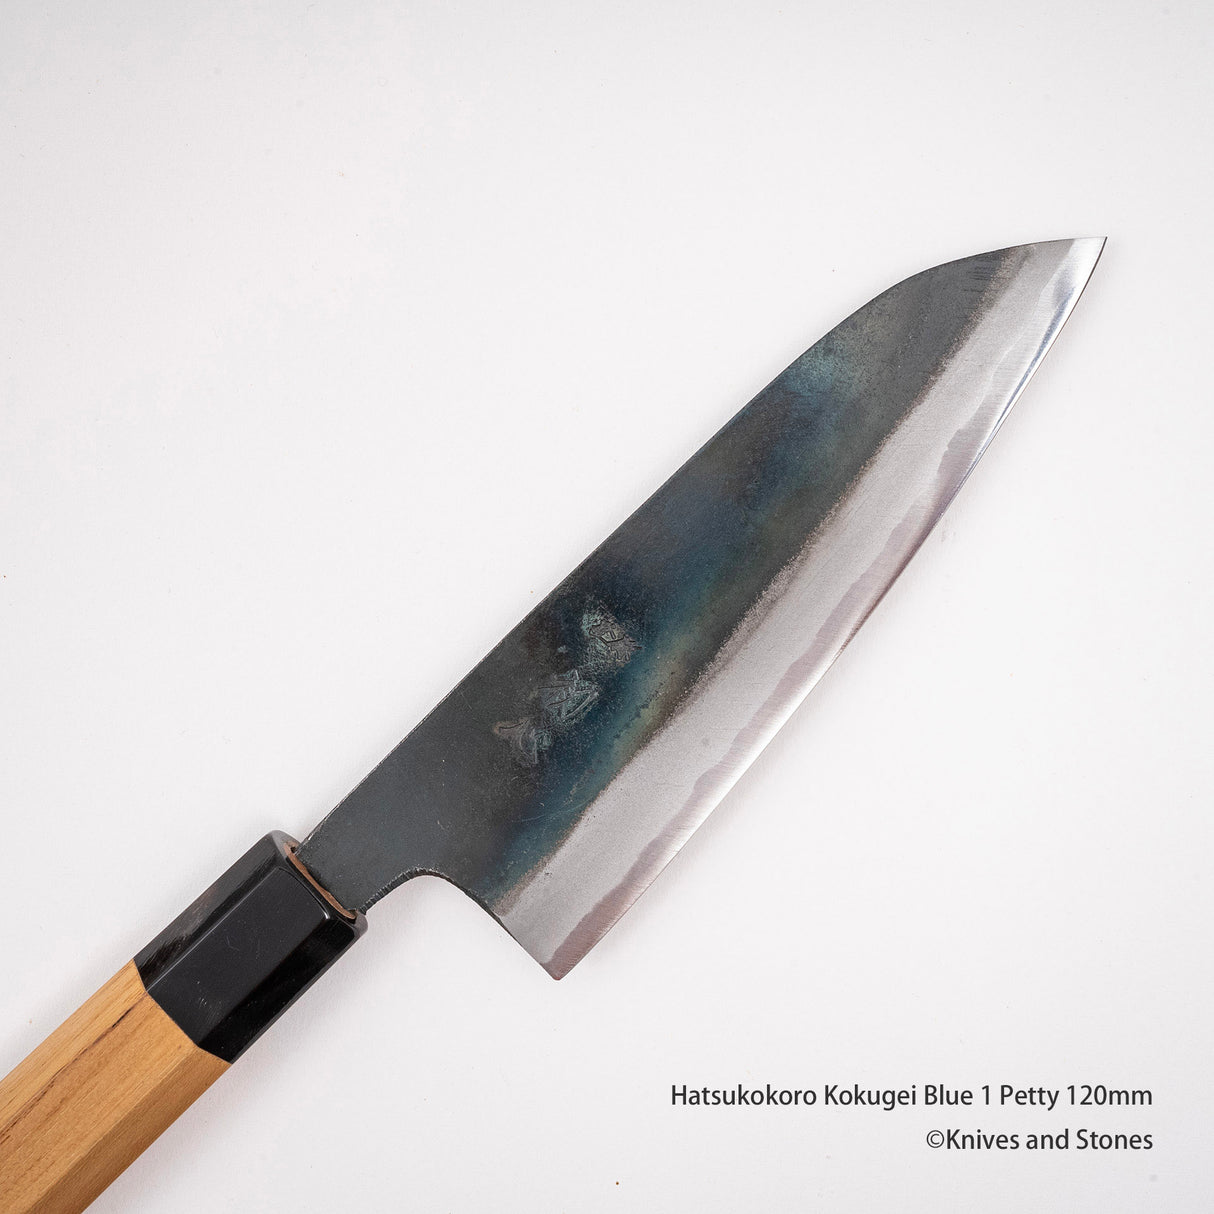 Hatsukokoro Kokugei Blue 1 Petty 120mm